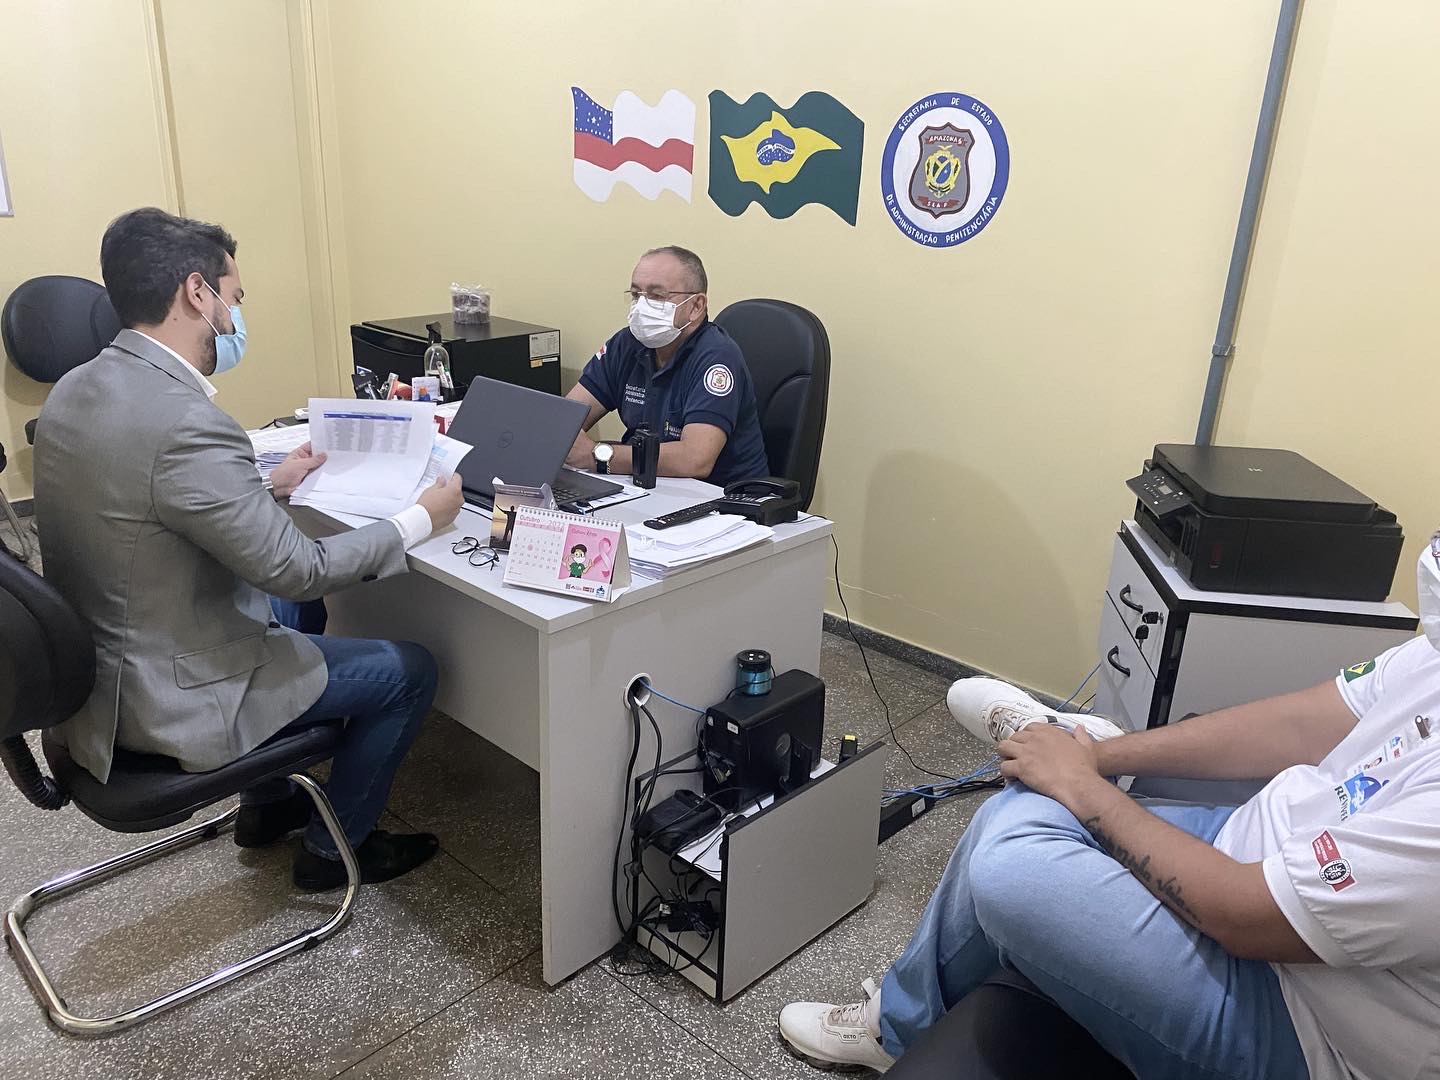 O juiz Saulo Góes alinhou a realização do mutirão em dezembro de 2022, em reunião com a direção da unidade prisional de Itacoatiara.